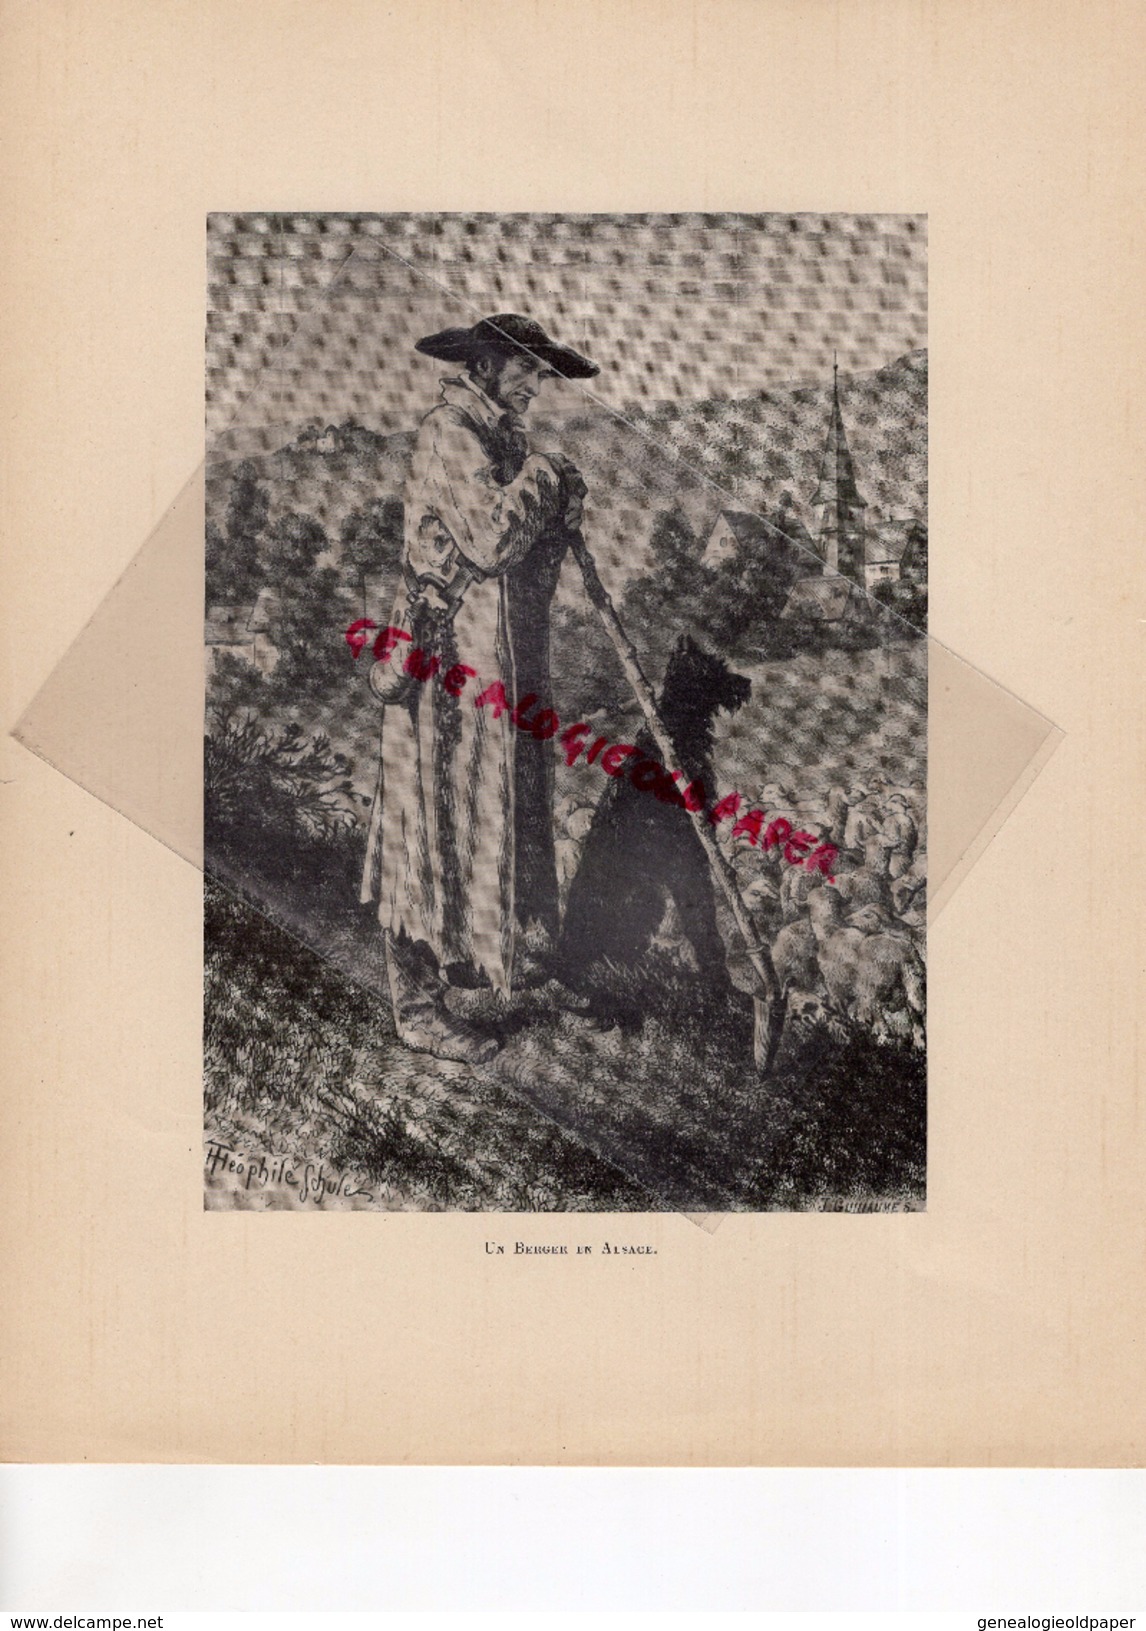 COSTUMES FRANCE XIXE S.- 67-68- UN BERGER EN ALSACE- IMPRIMERIE FIRMIN DIDOT PAPETERIES DE CONDAT-1932 - Estampes & Gravures